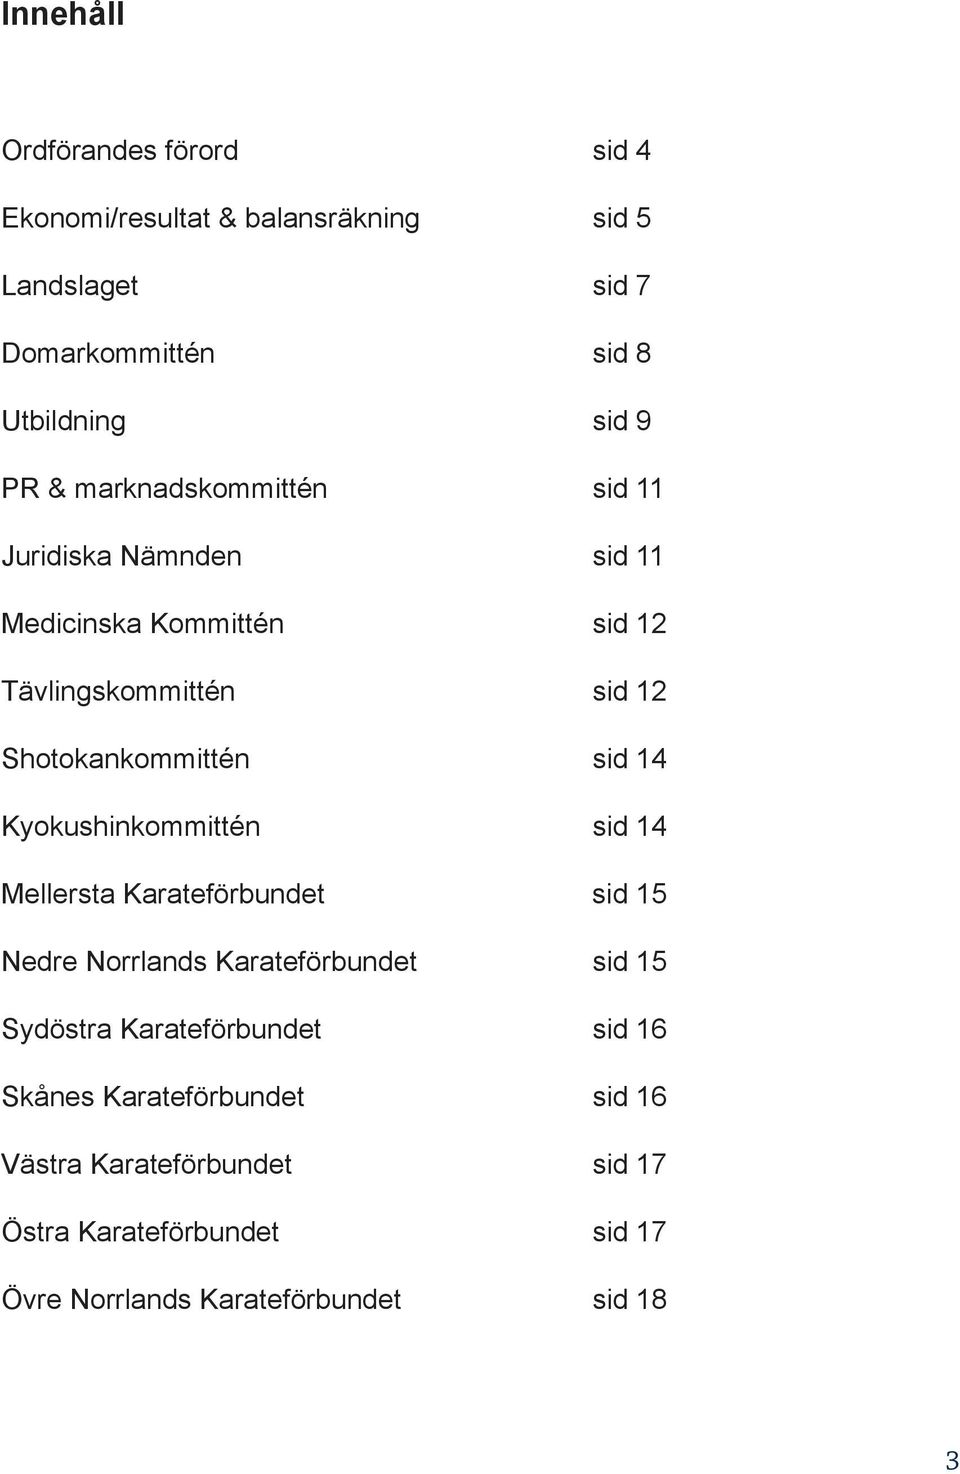 14 Kyokushinkommittén sid 14 Mellersta Karateförbundet sid 15 Nedre Norrlands Karateförbundet sid 15 Sydöstra Karateförbundet sid